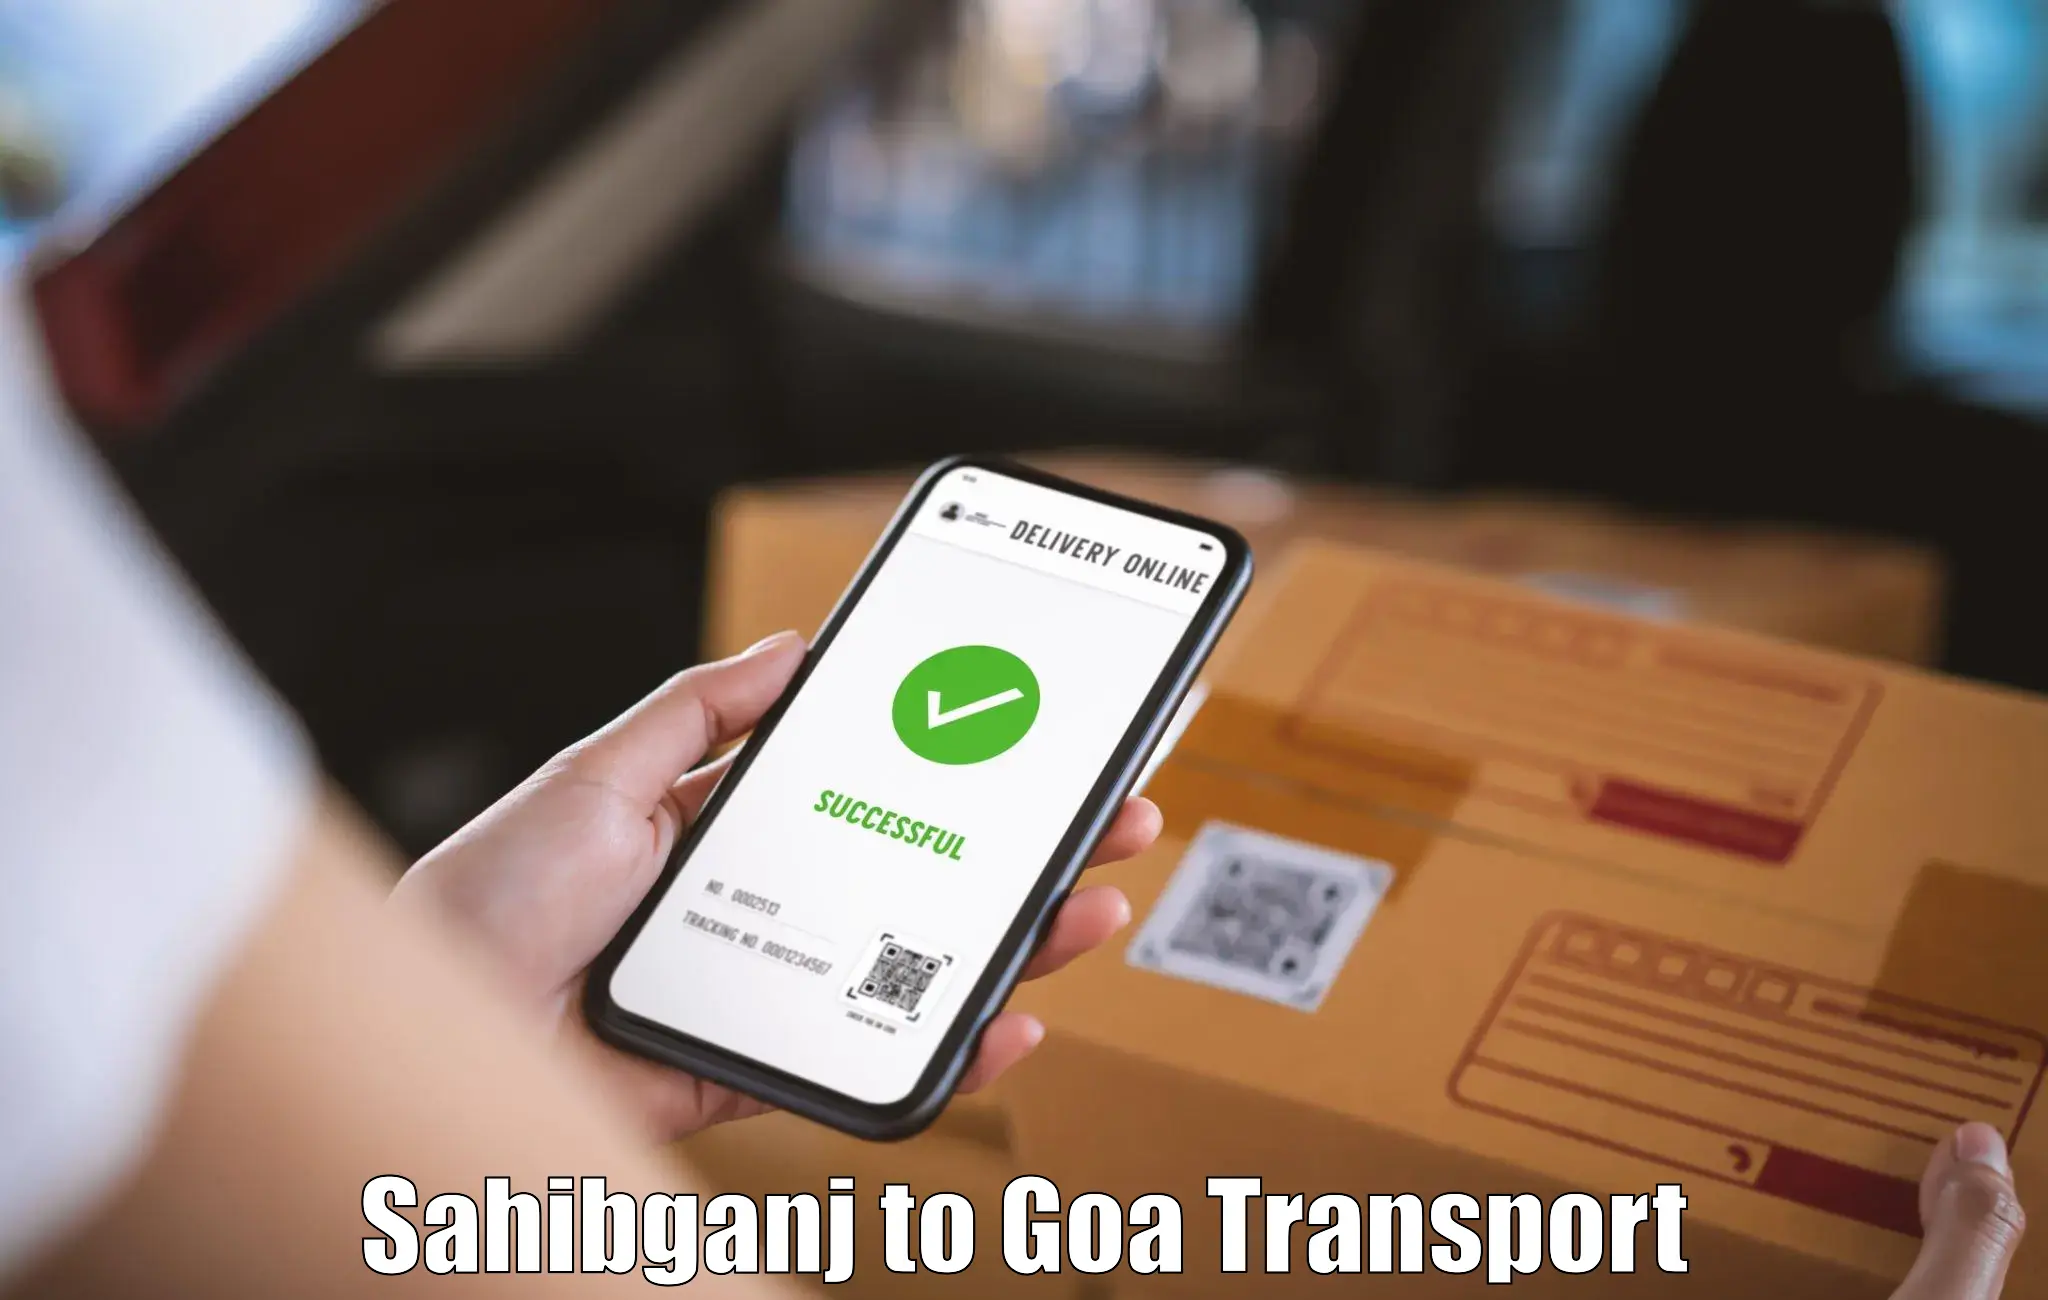 Transport in sharing Sahibganj to Margao